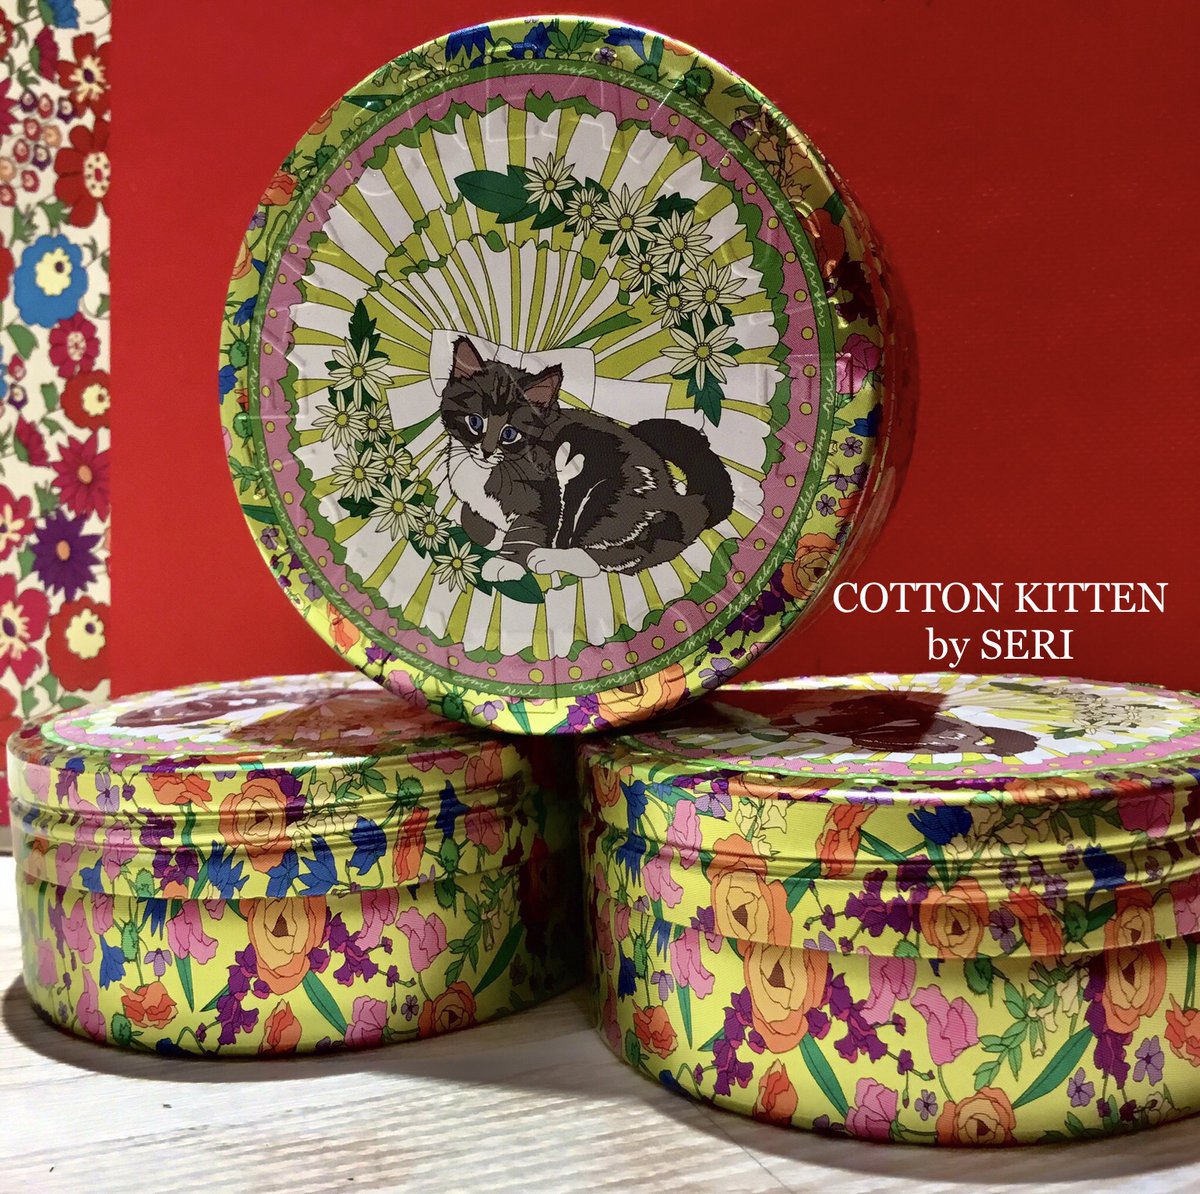 スチームクリーム ルミネ有楽町店 こんにちは スタッフのミチです 今日は私のオススメデザインのご紹介です お腹にハートマークがチャームポイントの猫ちゃんと 華やかなお花があしらわれたチャーミングな缶 Cotton Kitten コットンキトゥン 猫